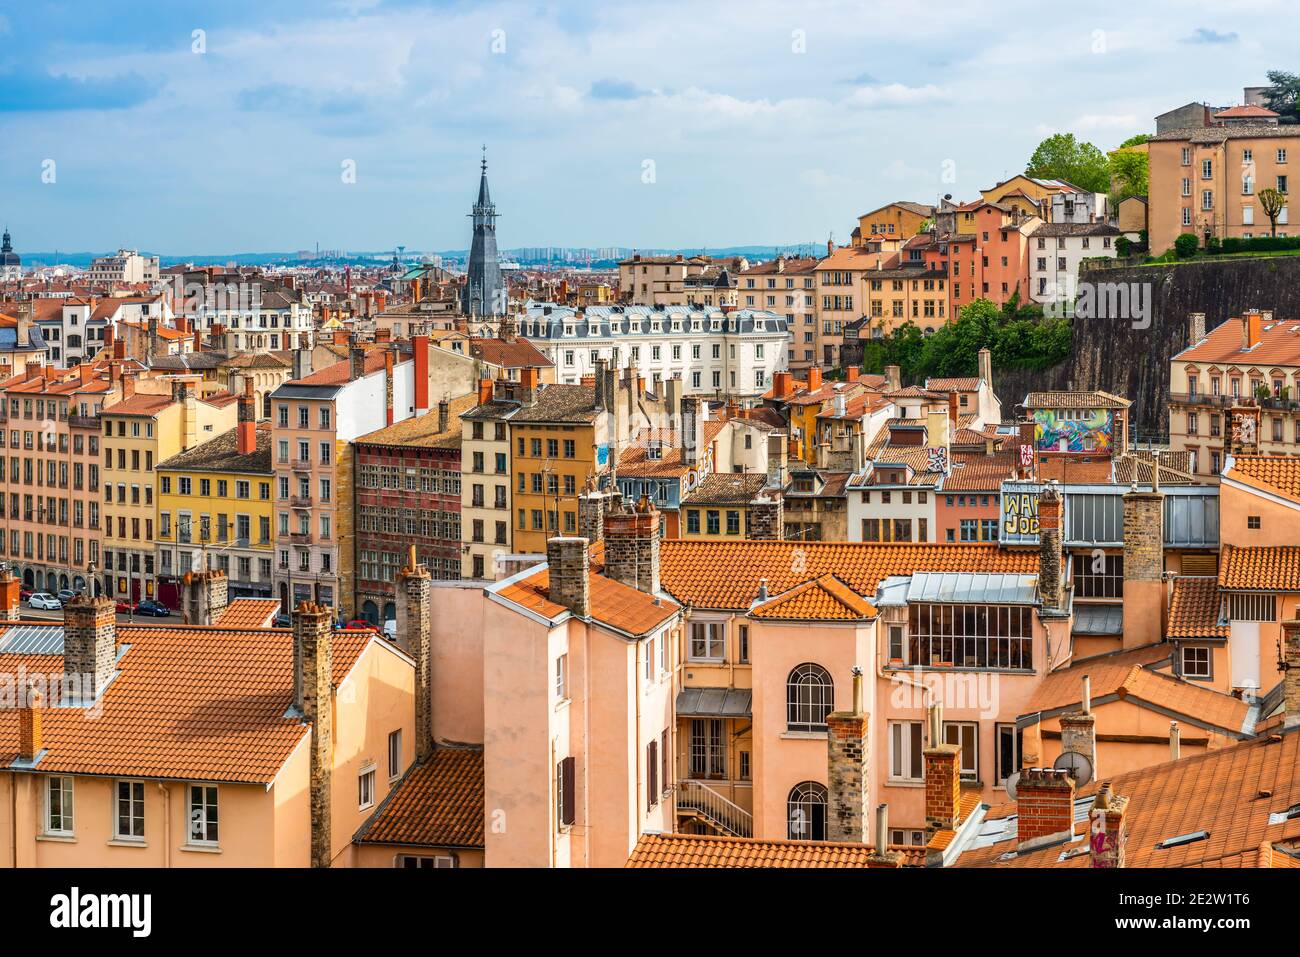 Vista panoramica della città di Lione dal quartiere Croix Rousse, Rhône, Francia Foto Stock